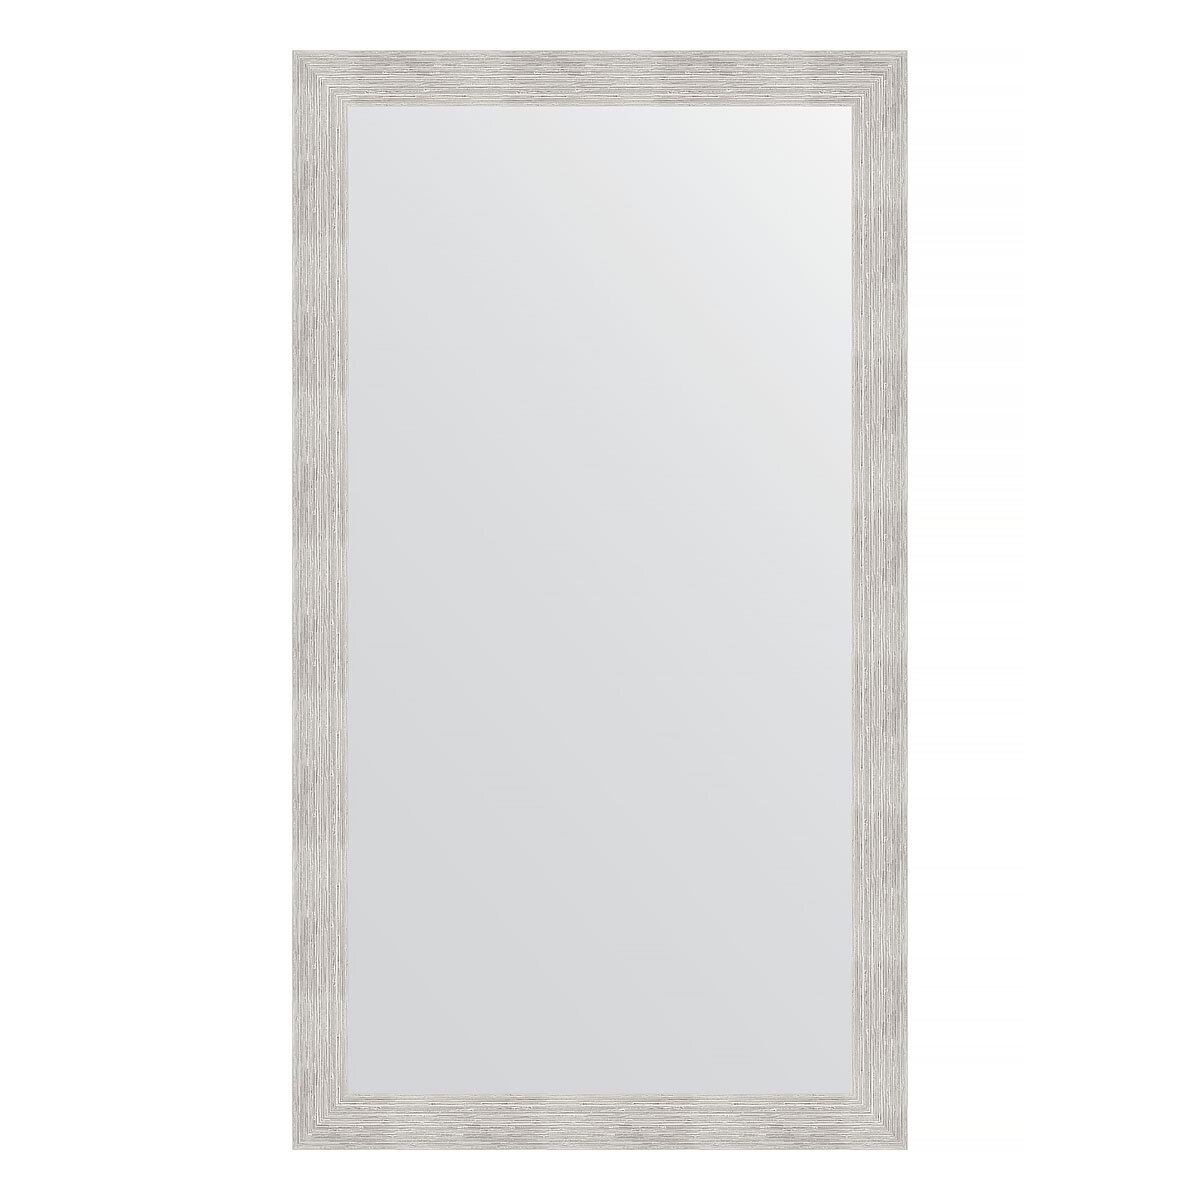 Evoform Зеркало настенное EVOFORM в багетной раме серебряный дождь, 76х136 см, BY 3304